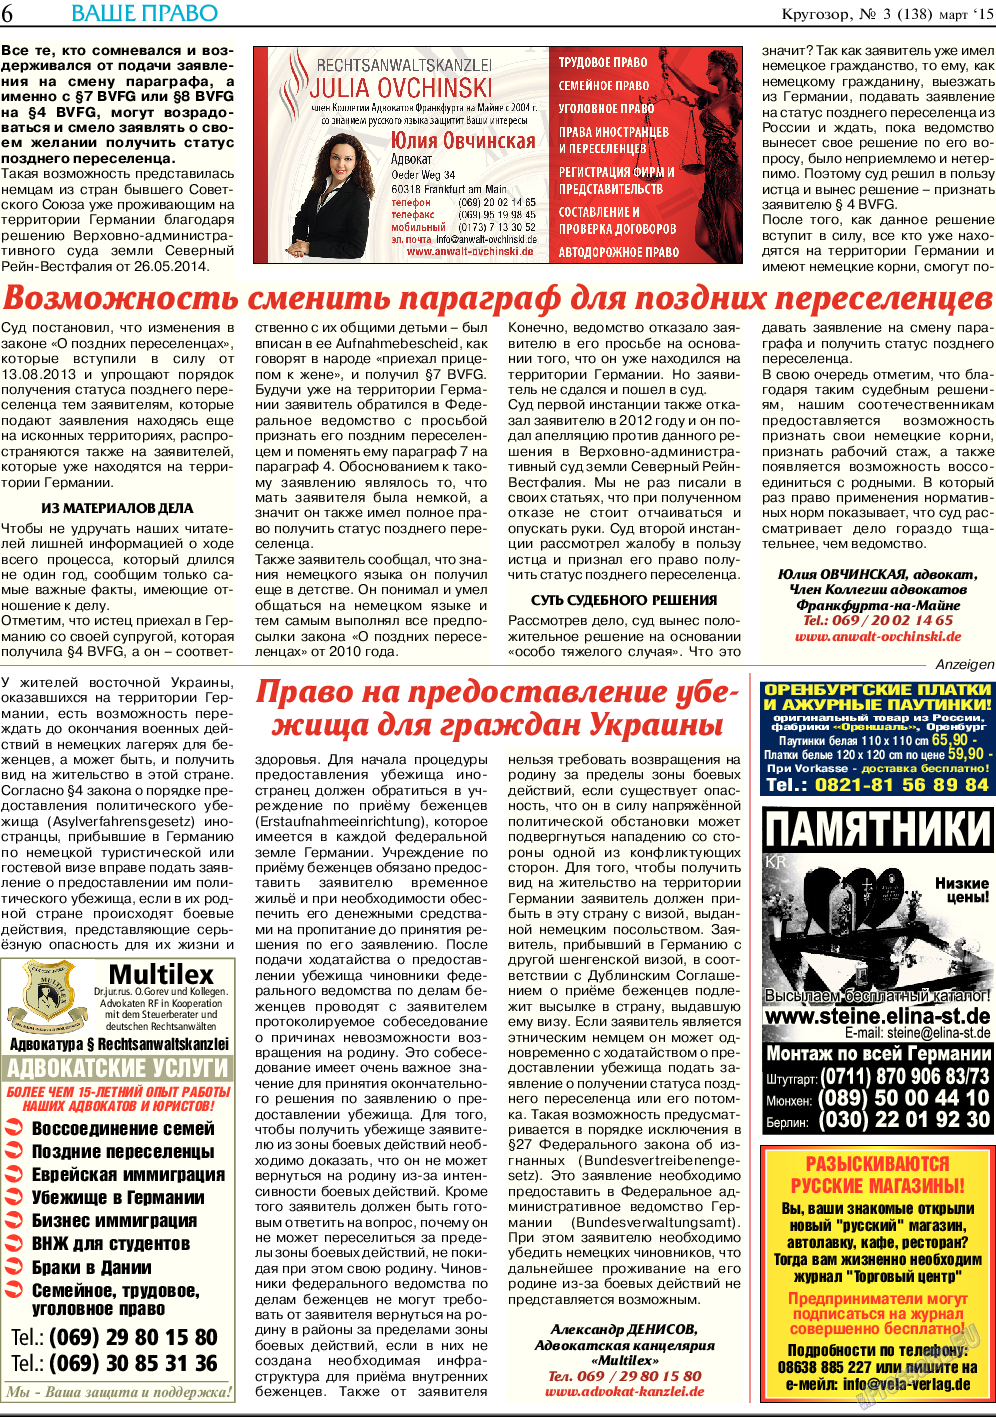 Кругозор, газета. 2015 №3 стр.6